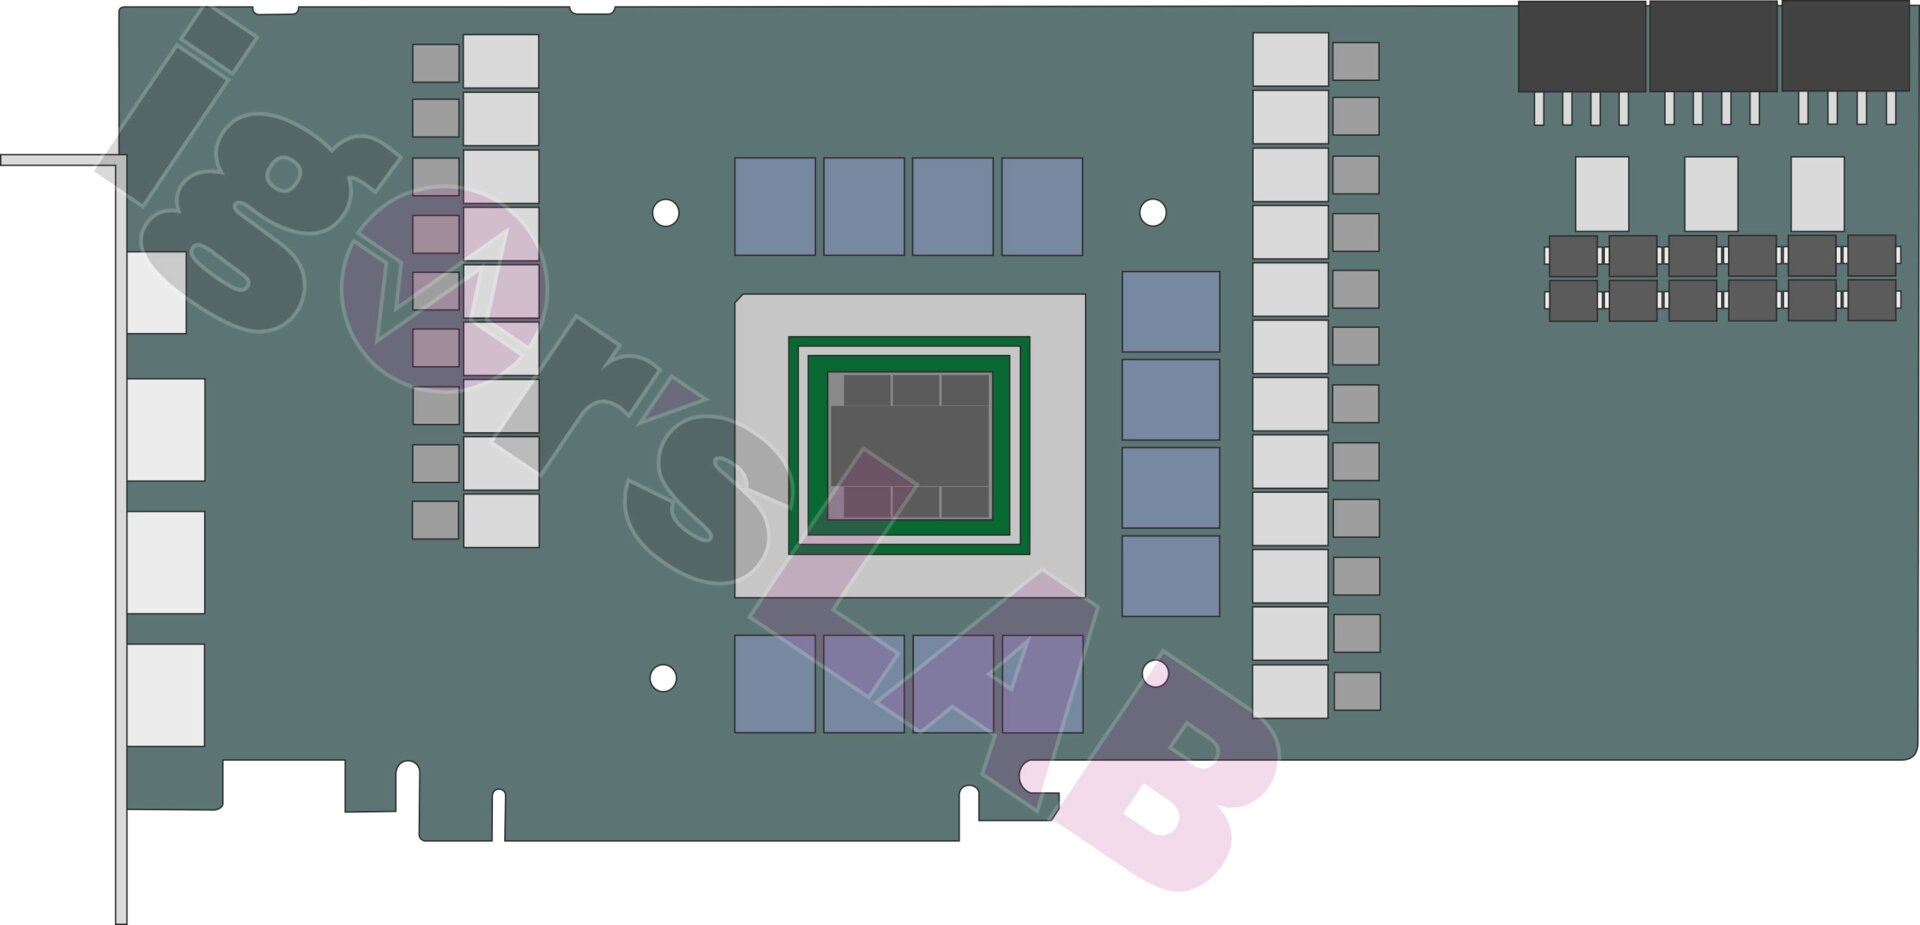 Dit is hoe de printplaat voor de Radeon RX 7900 XT eruit zou moeten zien in het referentieontwerp